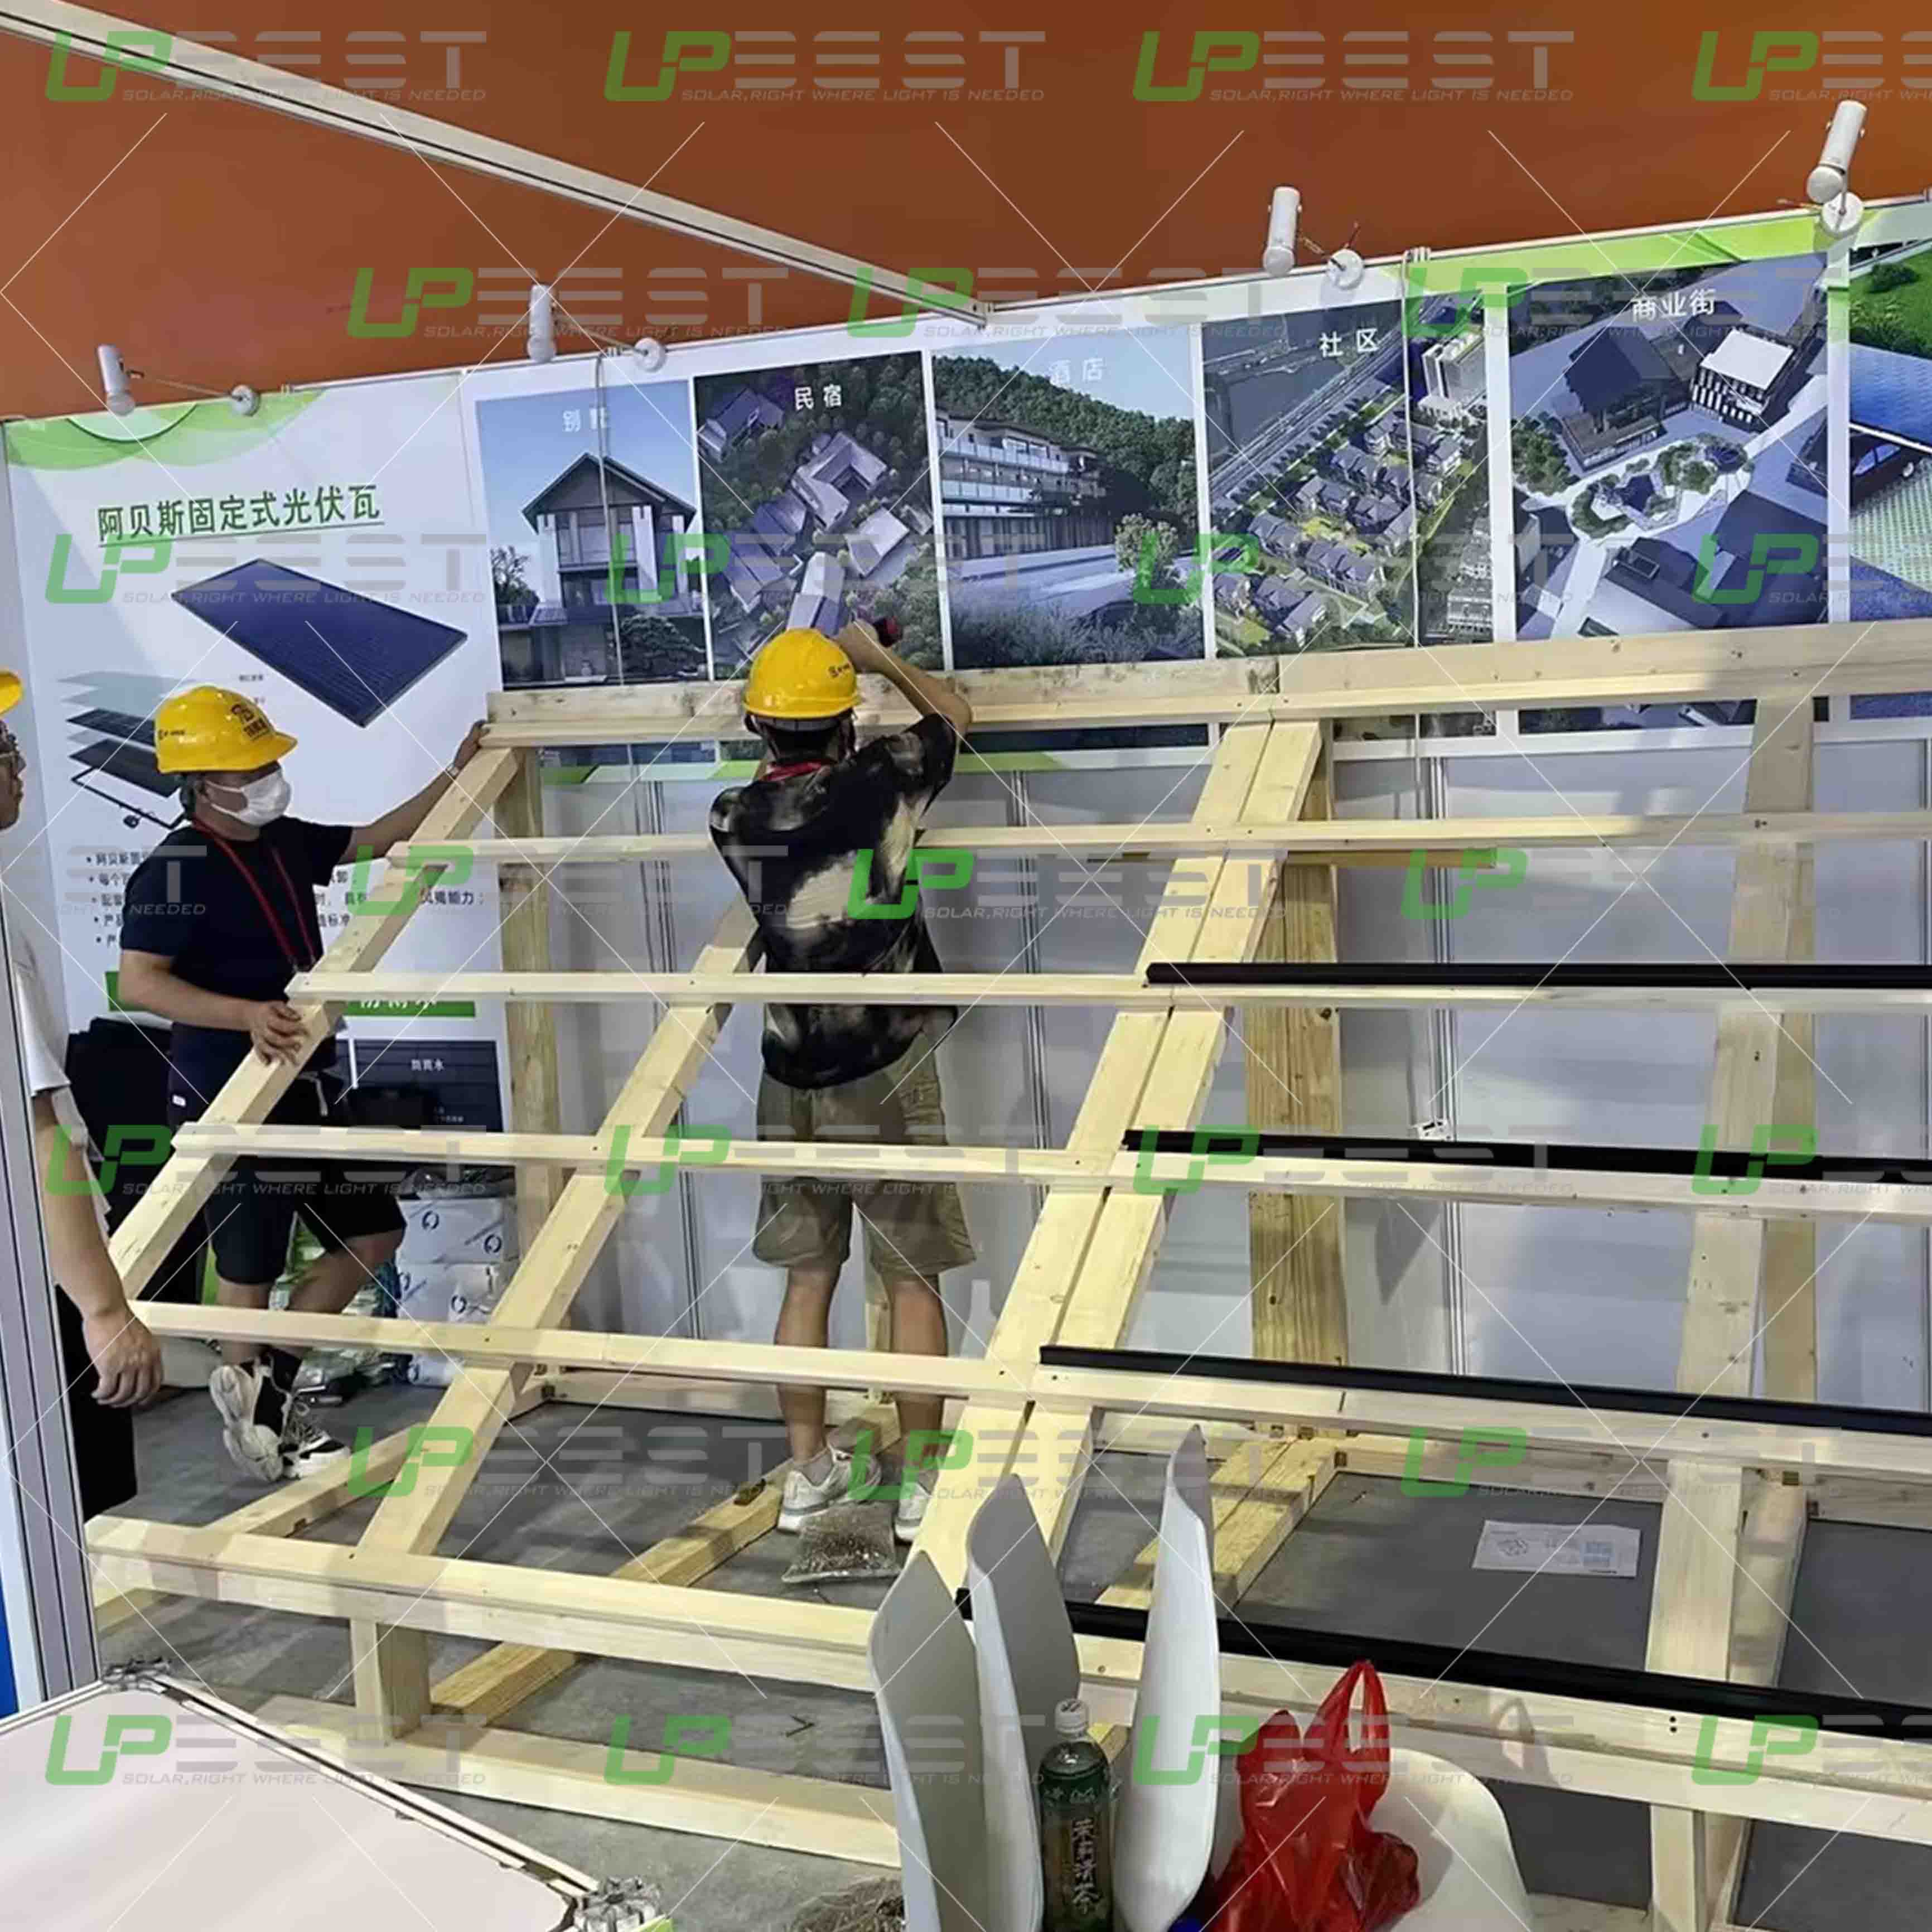 Upbest apresenta painéis BIPV de última geração na 16ª Expo Internacional Integrada da Indústria Habitacional e Industrialização de Edifícios da China